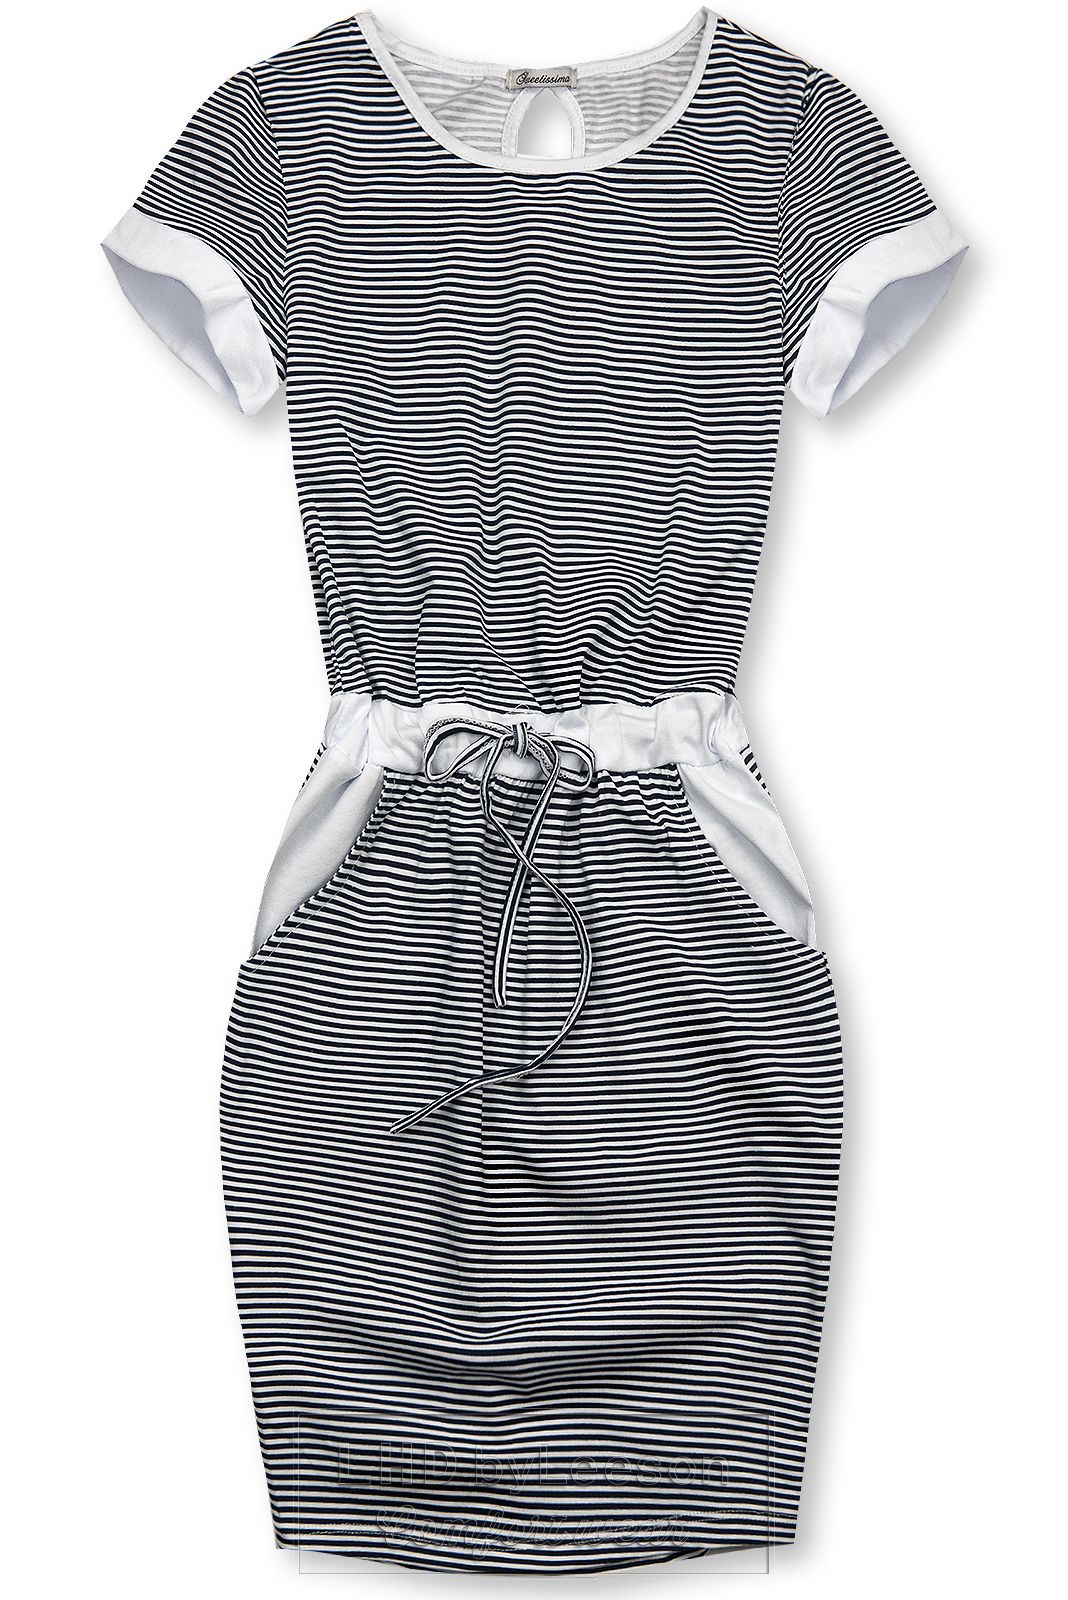 Granatowo-biała sukienka w paski IV.